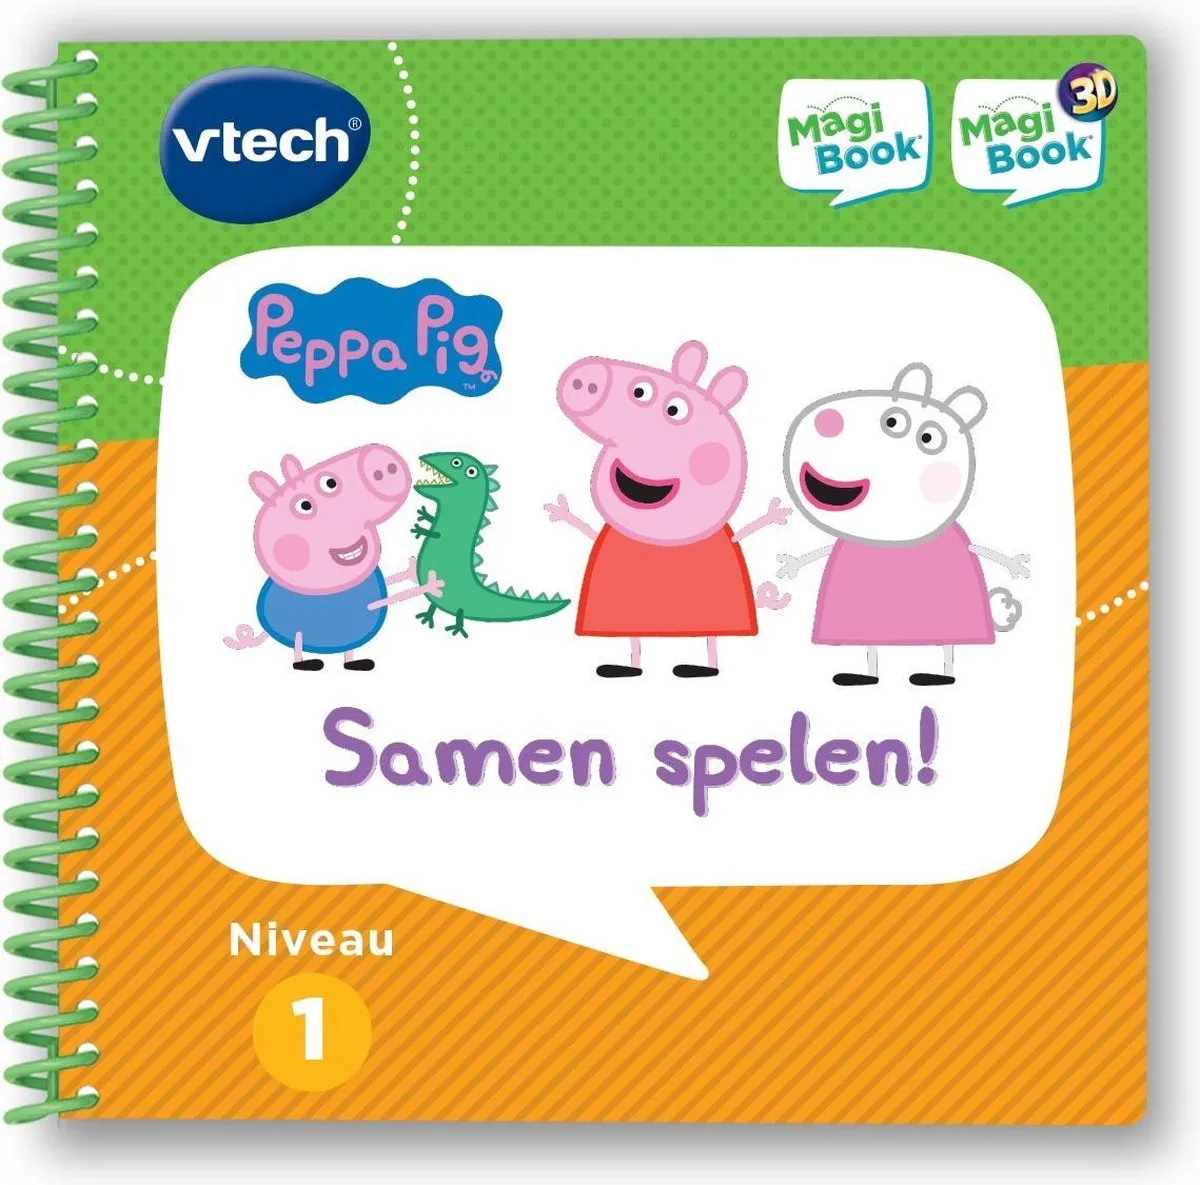 VTech MagiBook Activiteitenboek Peppa Pig - Samen Spelen! - Educatief Speelgoed - Niveau 1 - 2 tot 5 Jaar speelgoed